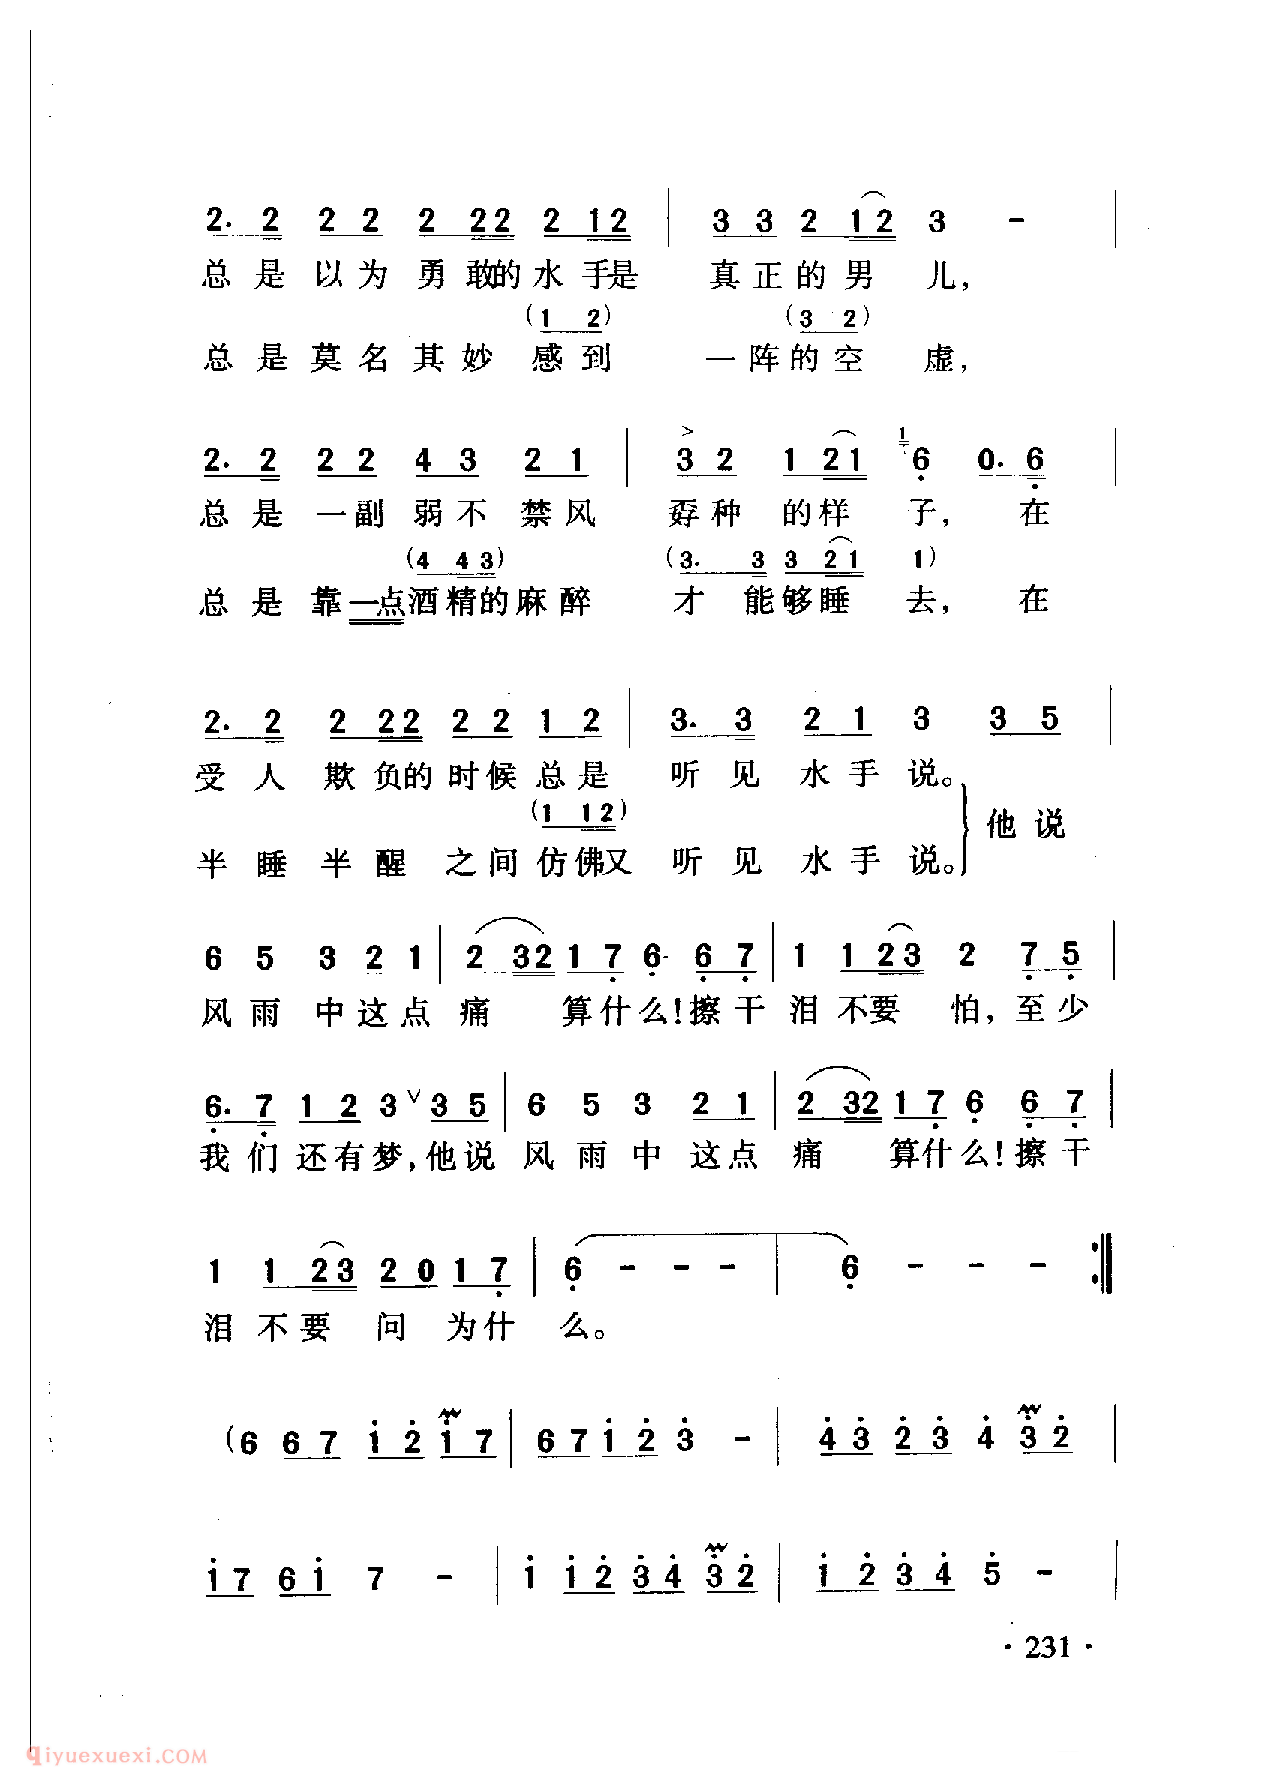 中国名歌[水手]乐谱